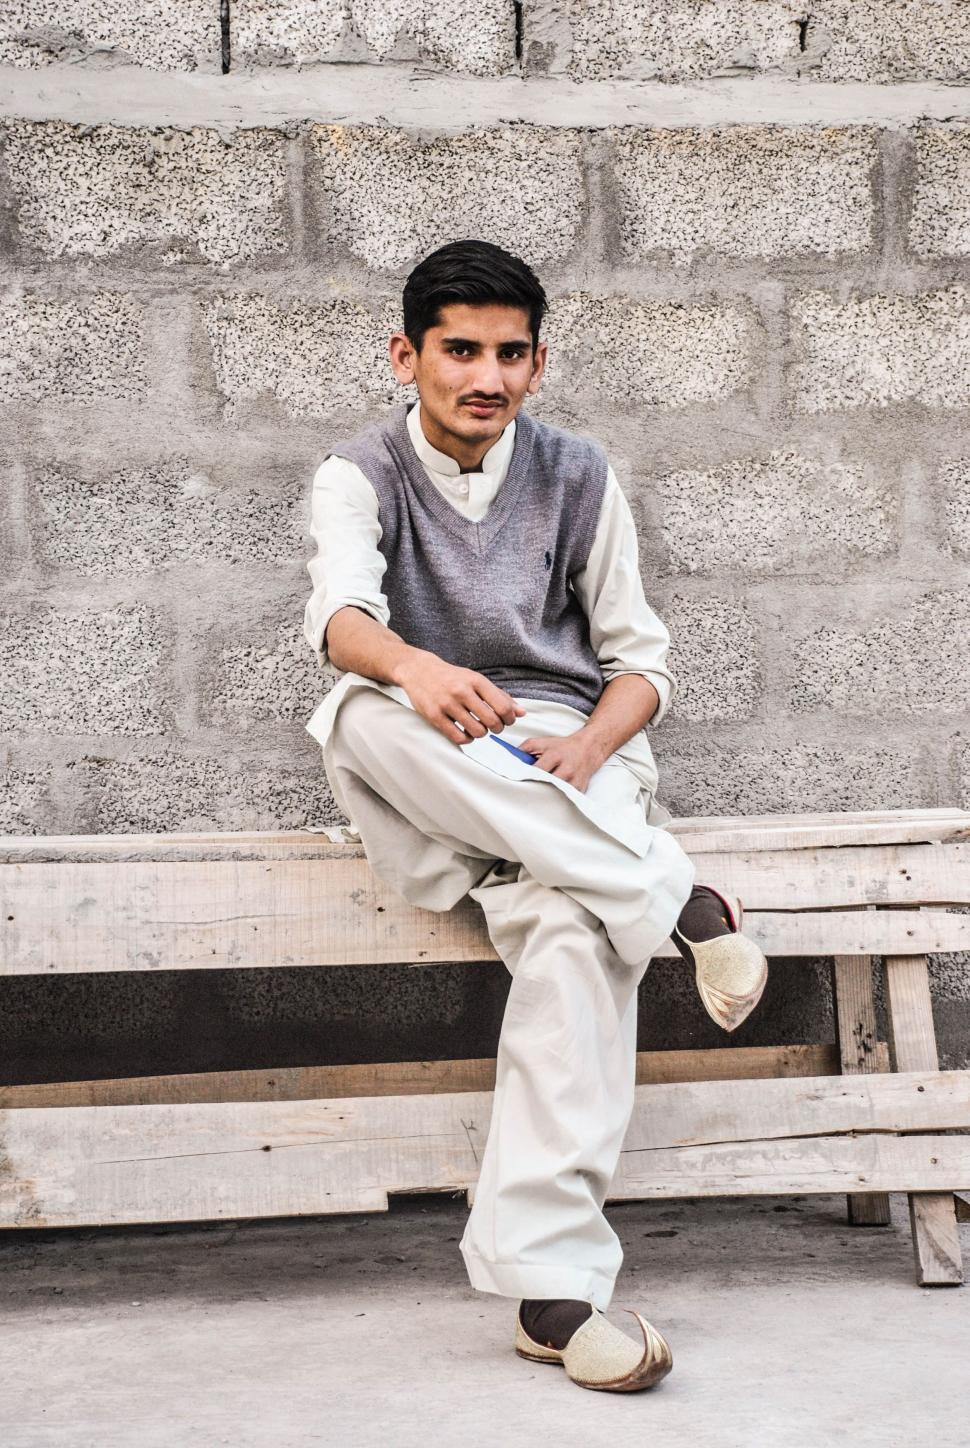 Free Image of Pakistani Man sitting outside  